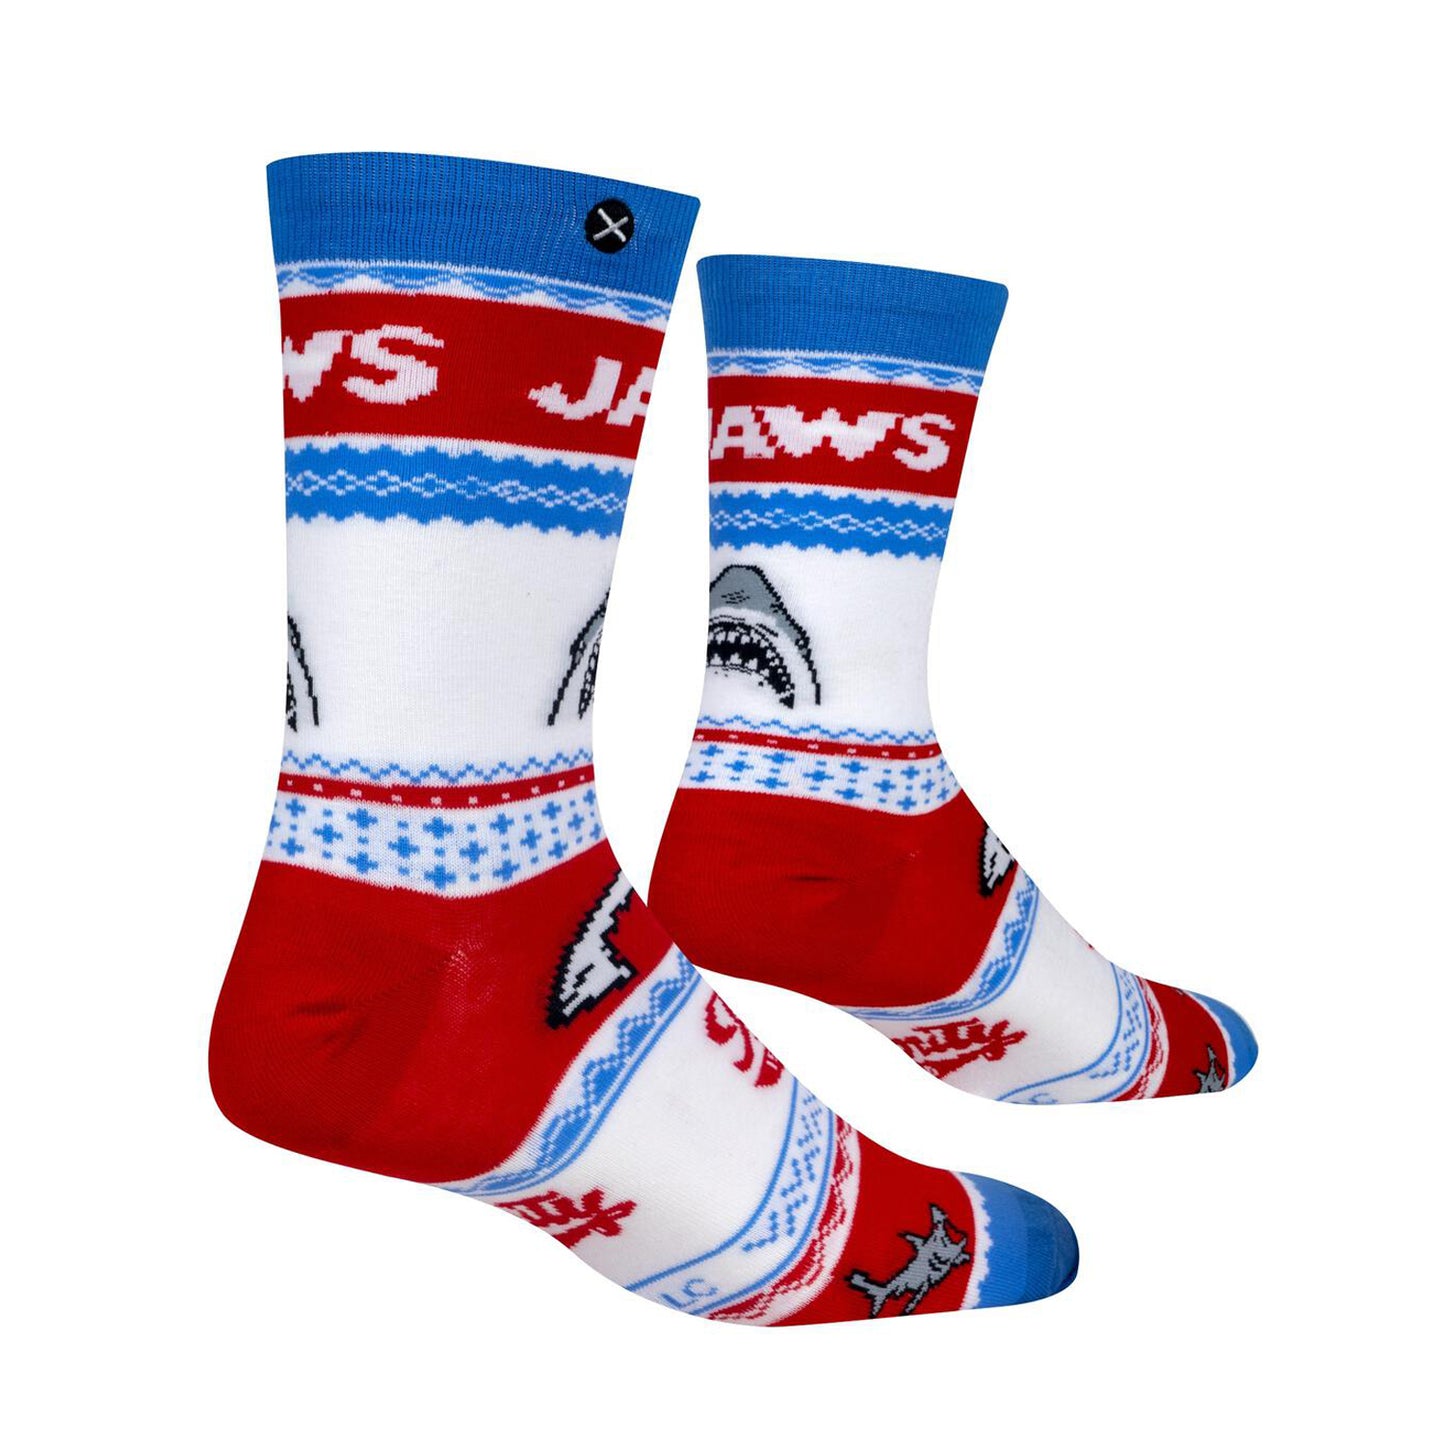 Odd Sox Men's Crew Socks - Jaws Sweater